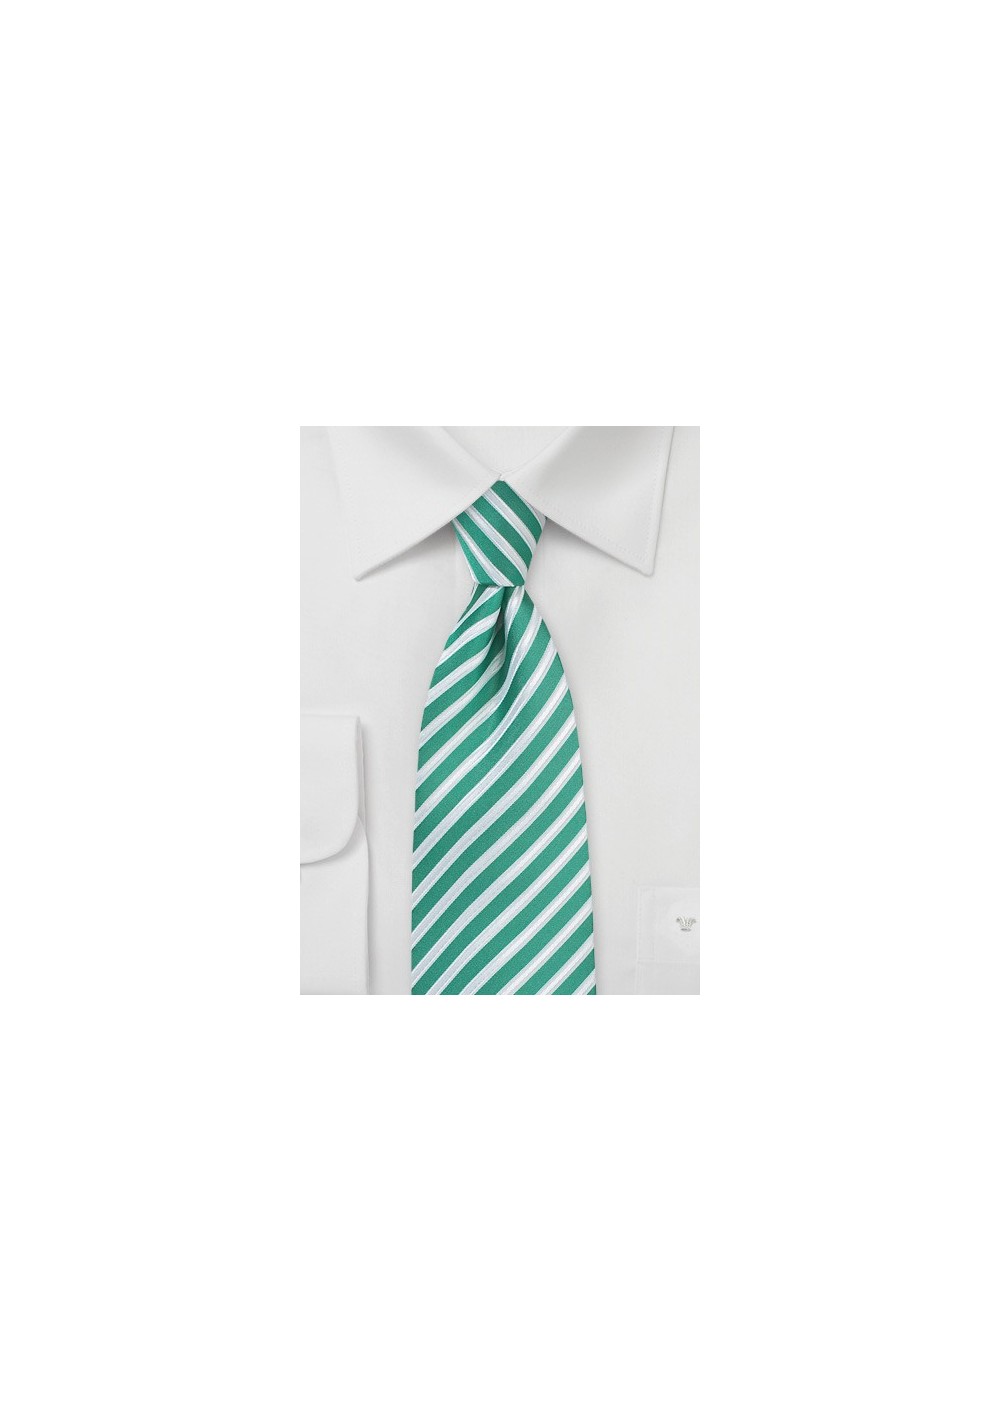 Striped Tie in Sea Green